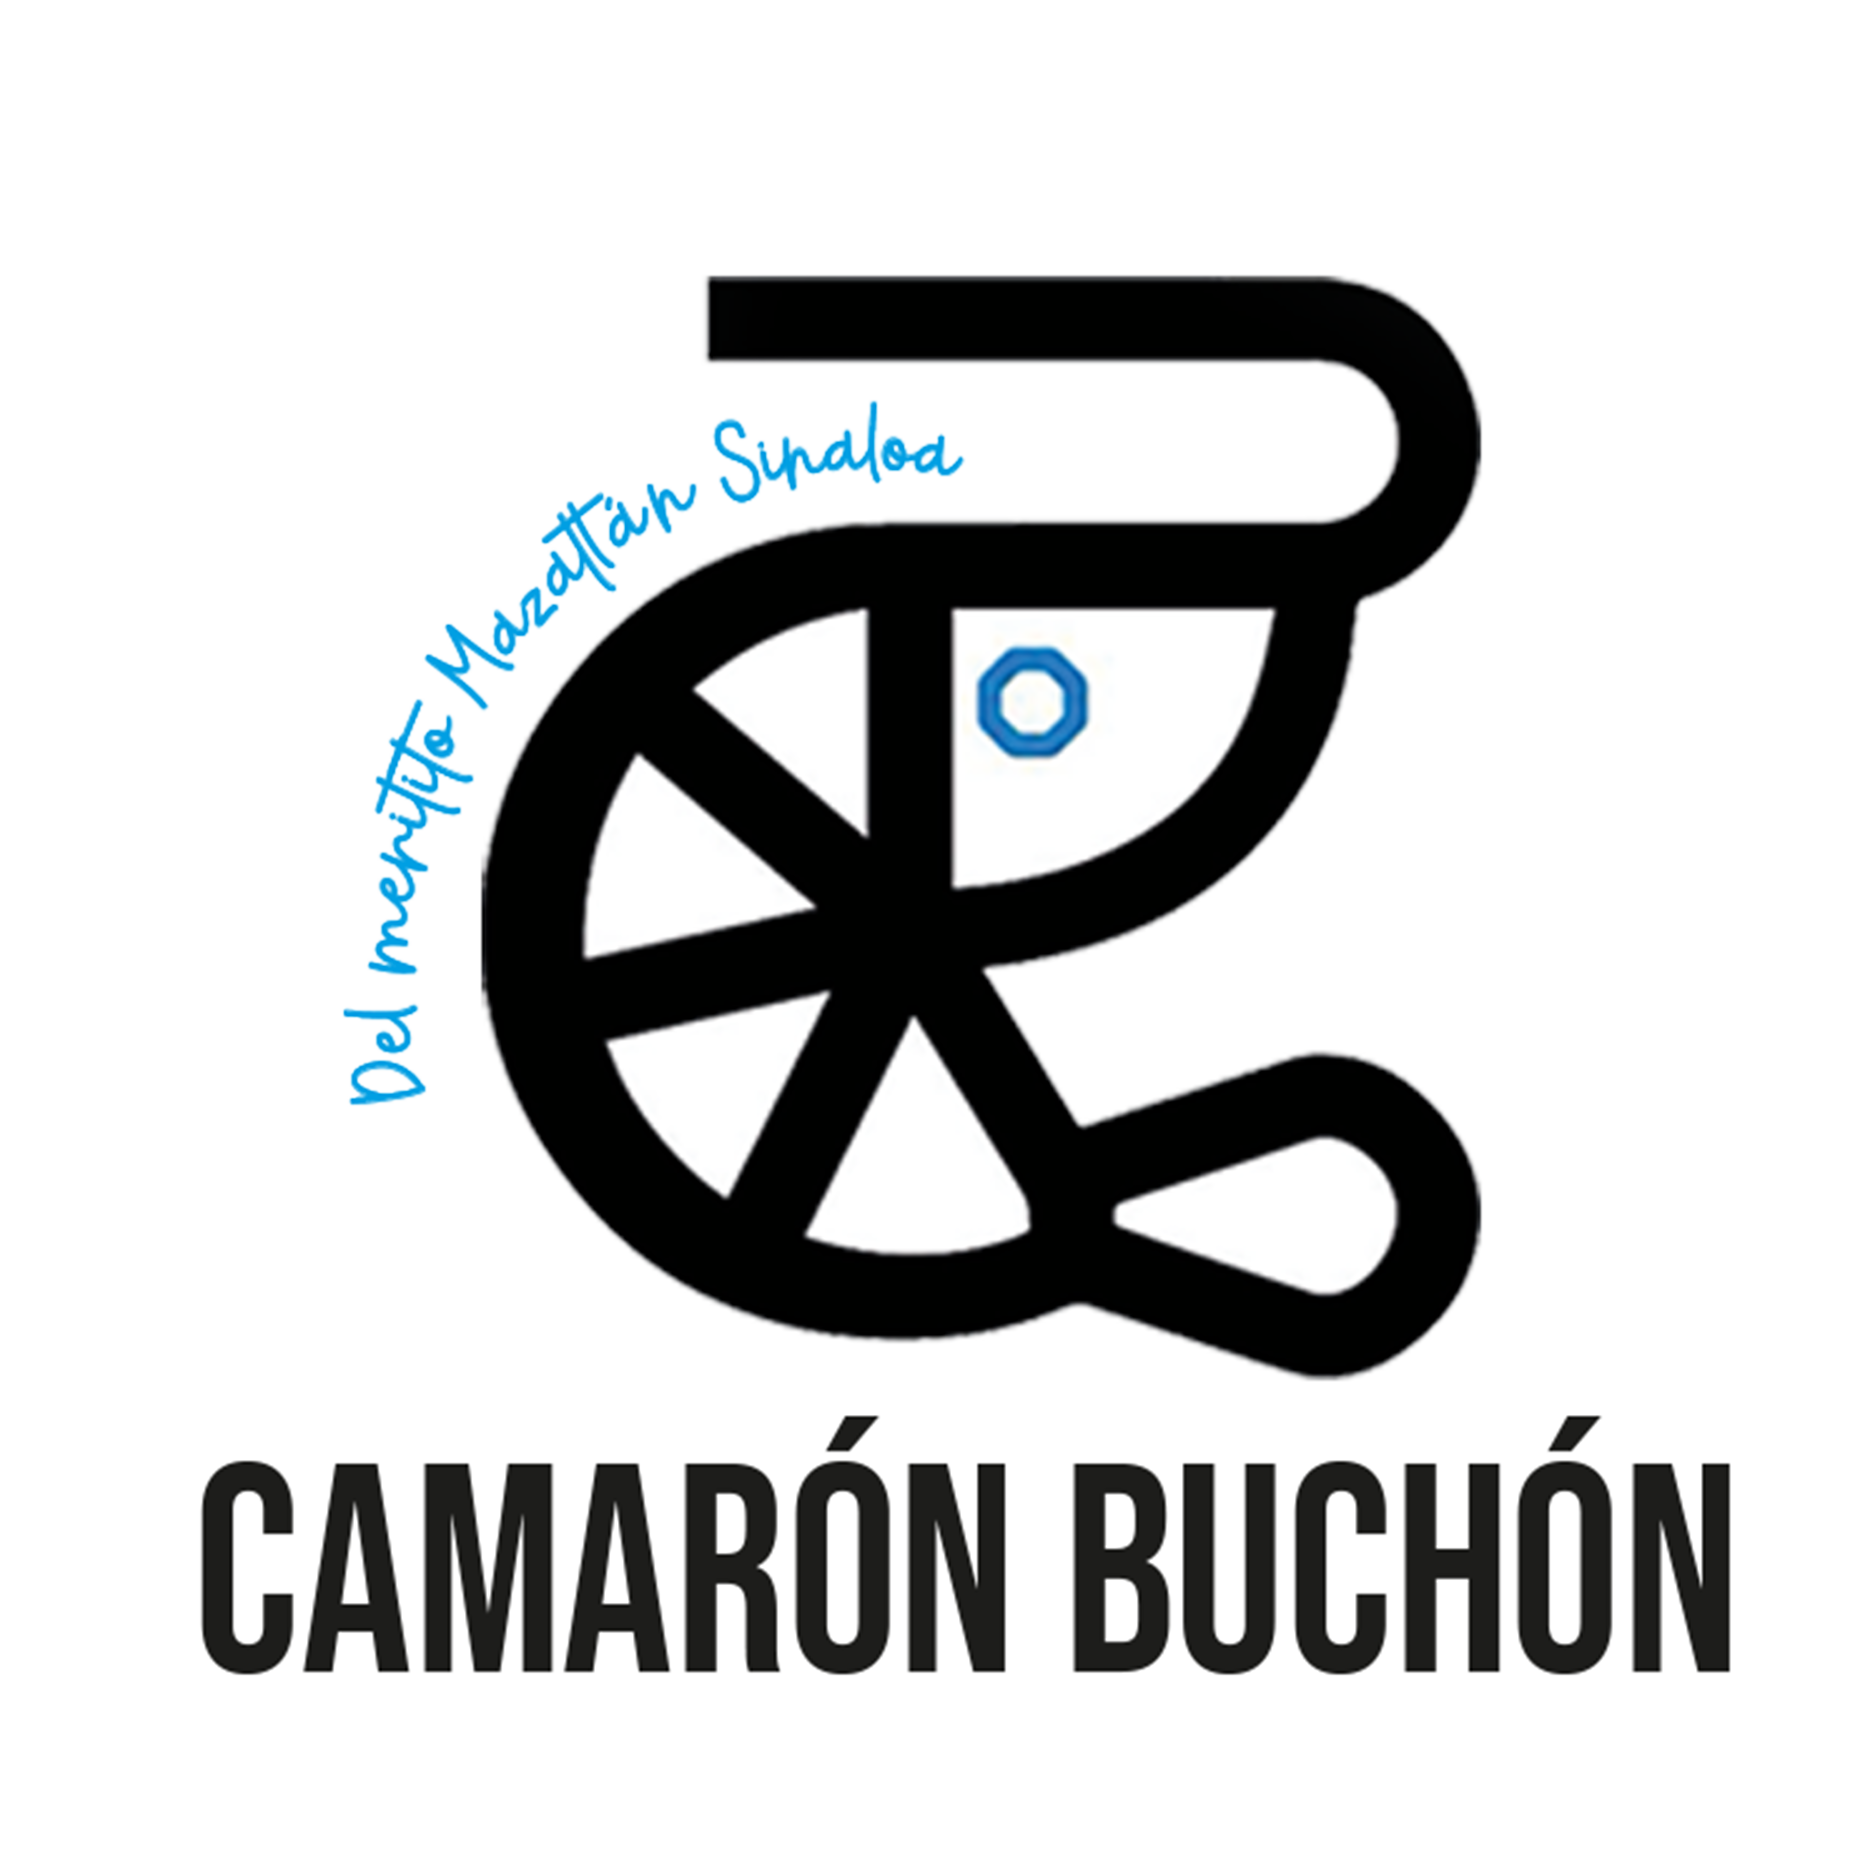 EL CAMARÓN BUCHÓN logo